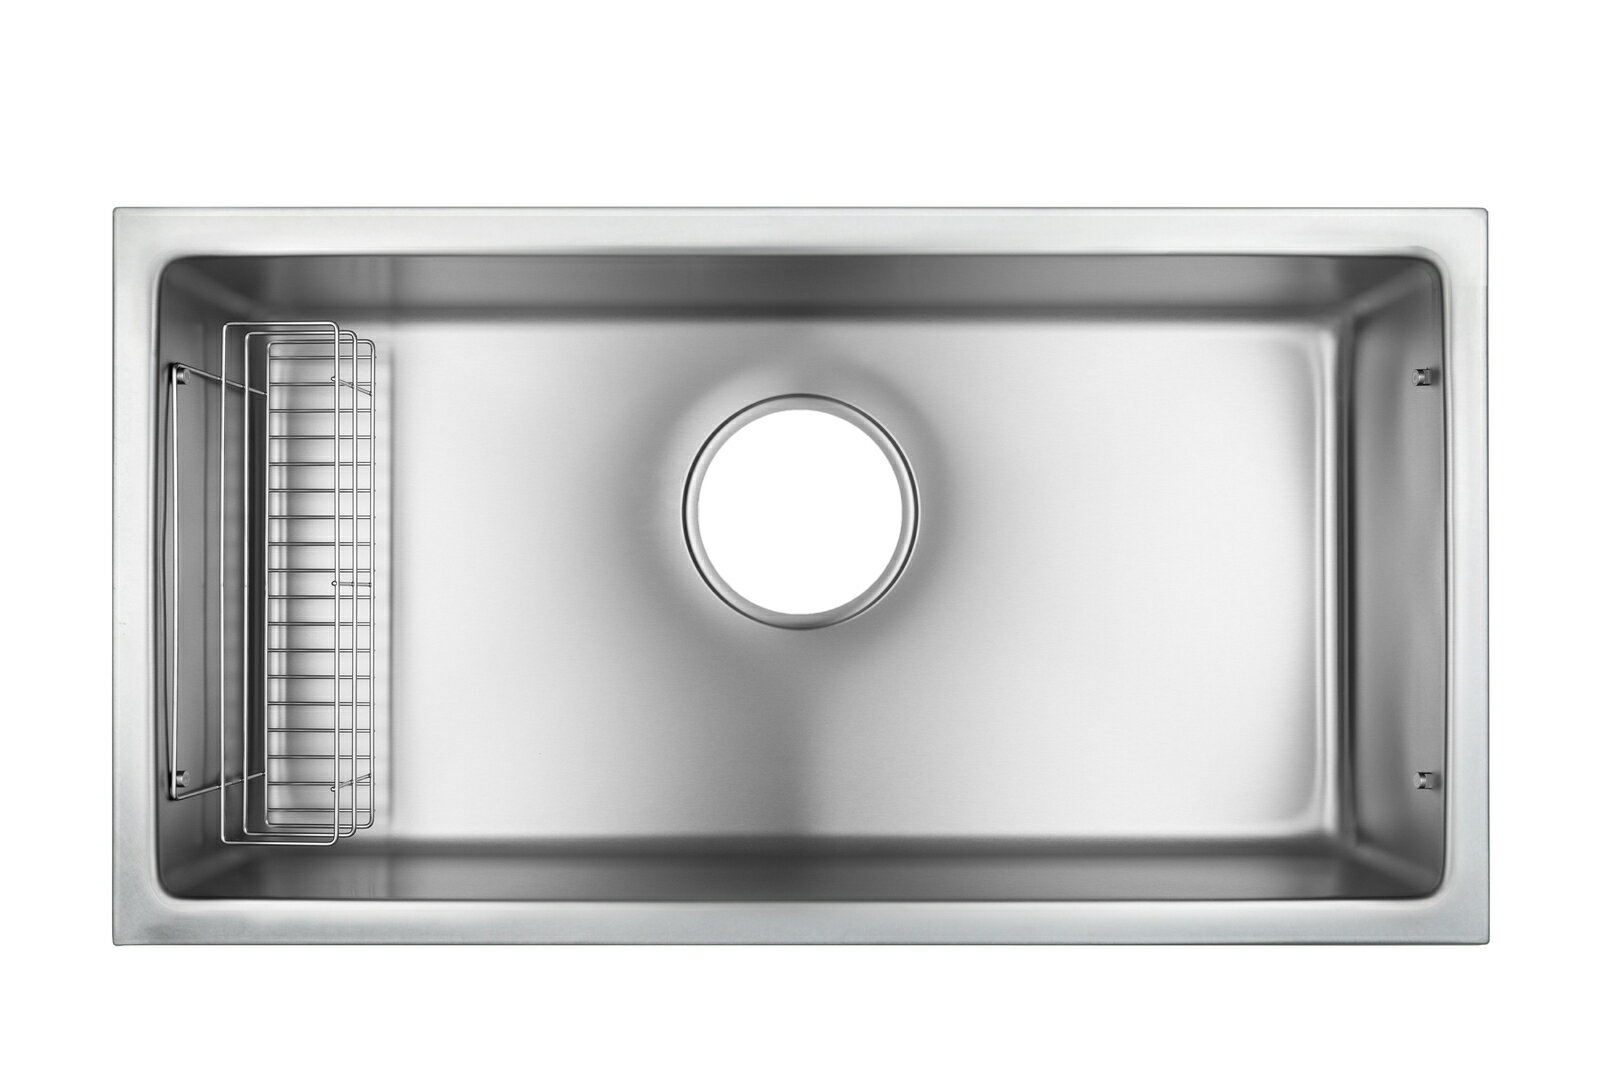 シゲル工業 国内メーカー オーバーシンク 品番DI JSL-K FS 段レール無し キッチン シンク オリジナルキッチン ステンレス オーバーシンク 適合排水セット 嬉しいコミコミ価格（項目選択肢から選べます）